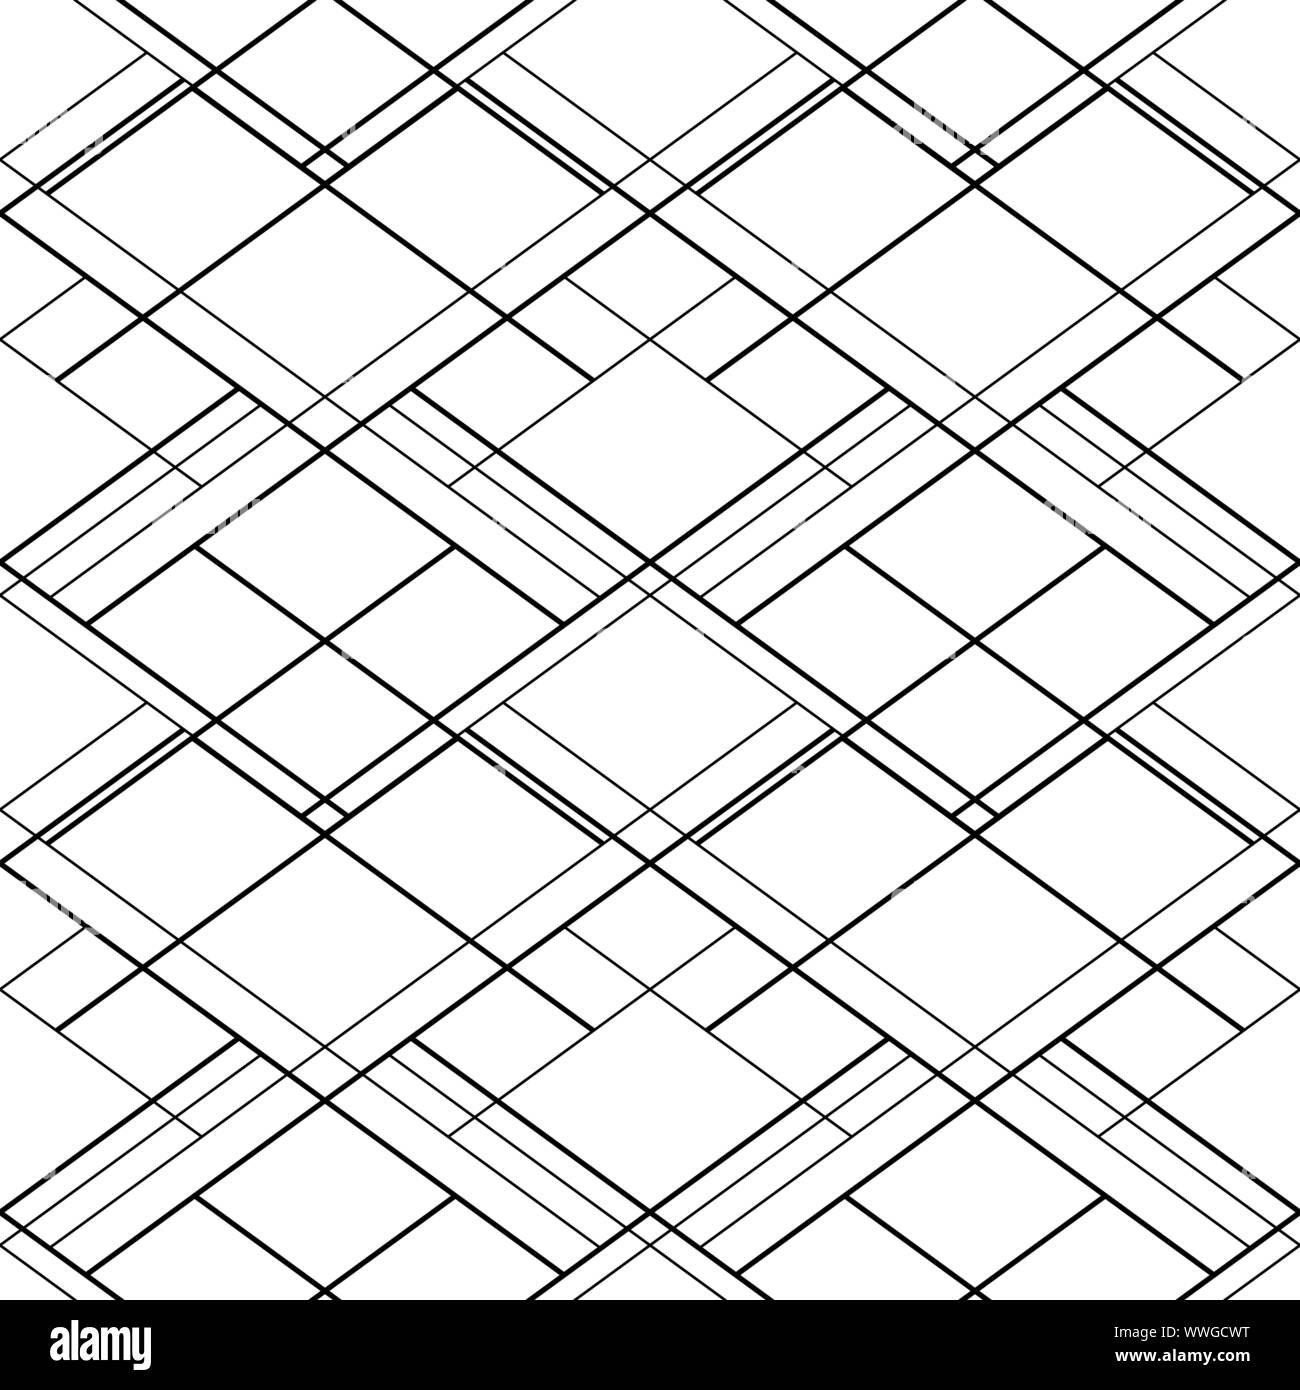 Zusammenfassung nahtlose Vektor Muster mit schwarzen Kreuz Linien auf einem weißen Hintergrund. Für Websites, Hintergrund, Wallpaper Design Stock Vektor